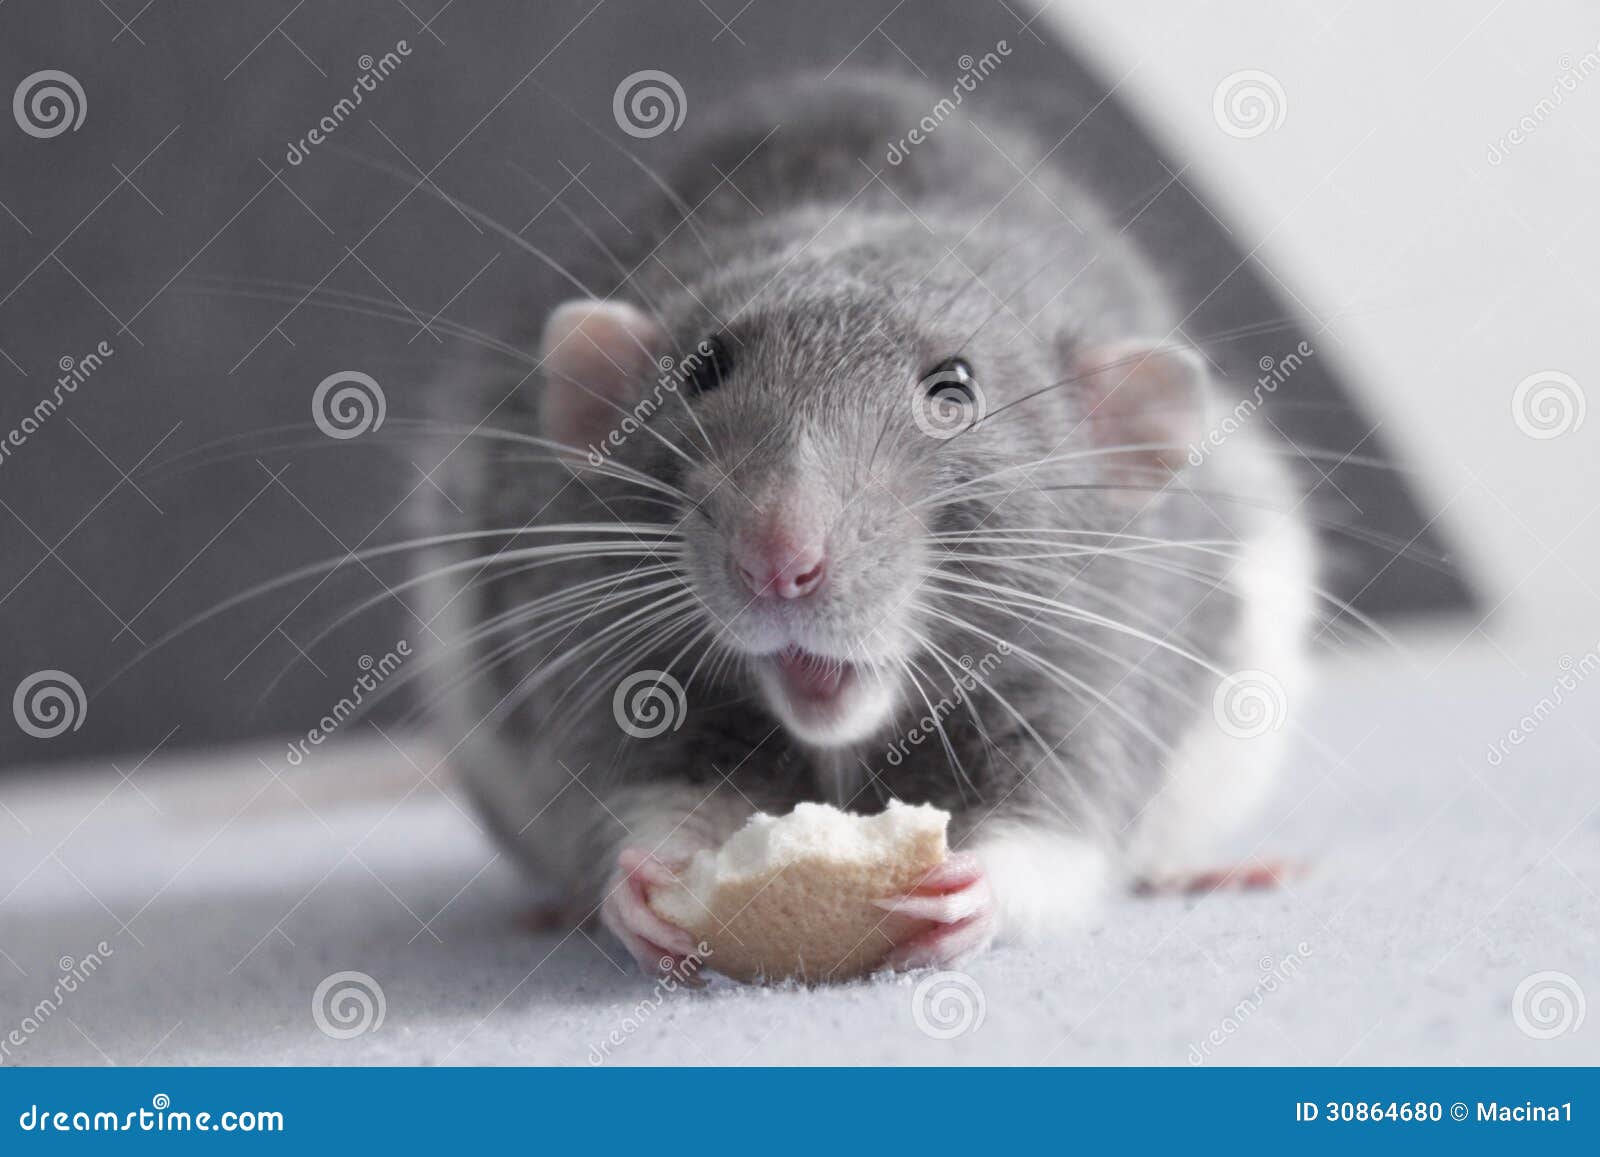 Hairless Rat stock image. Image of whisker, mammal, animal 